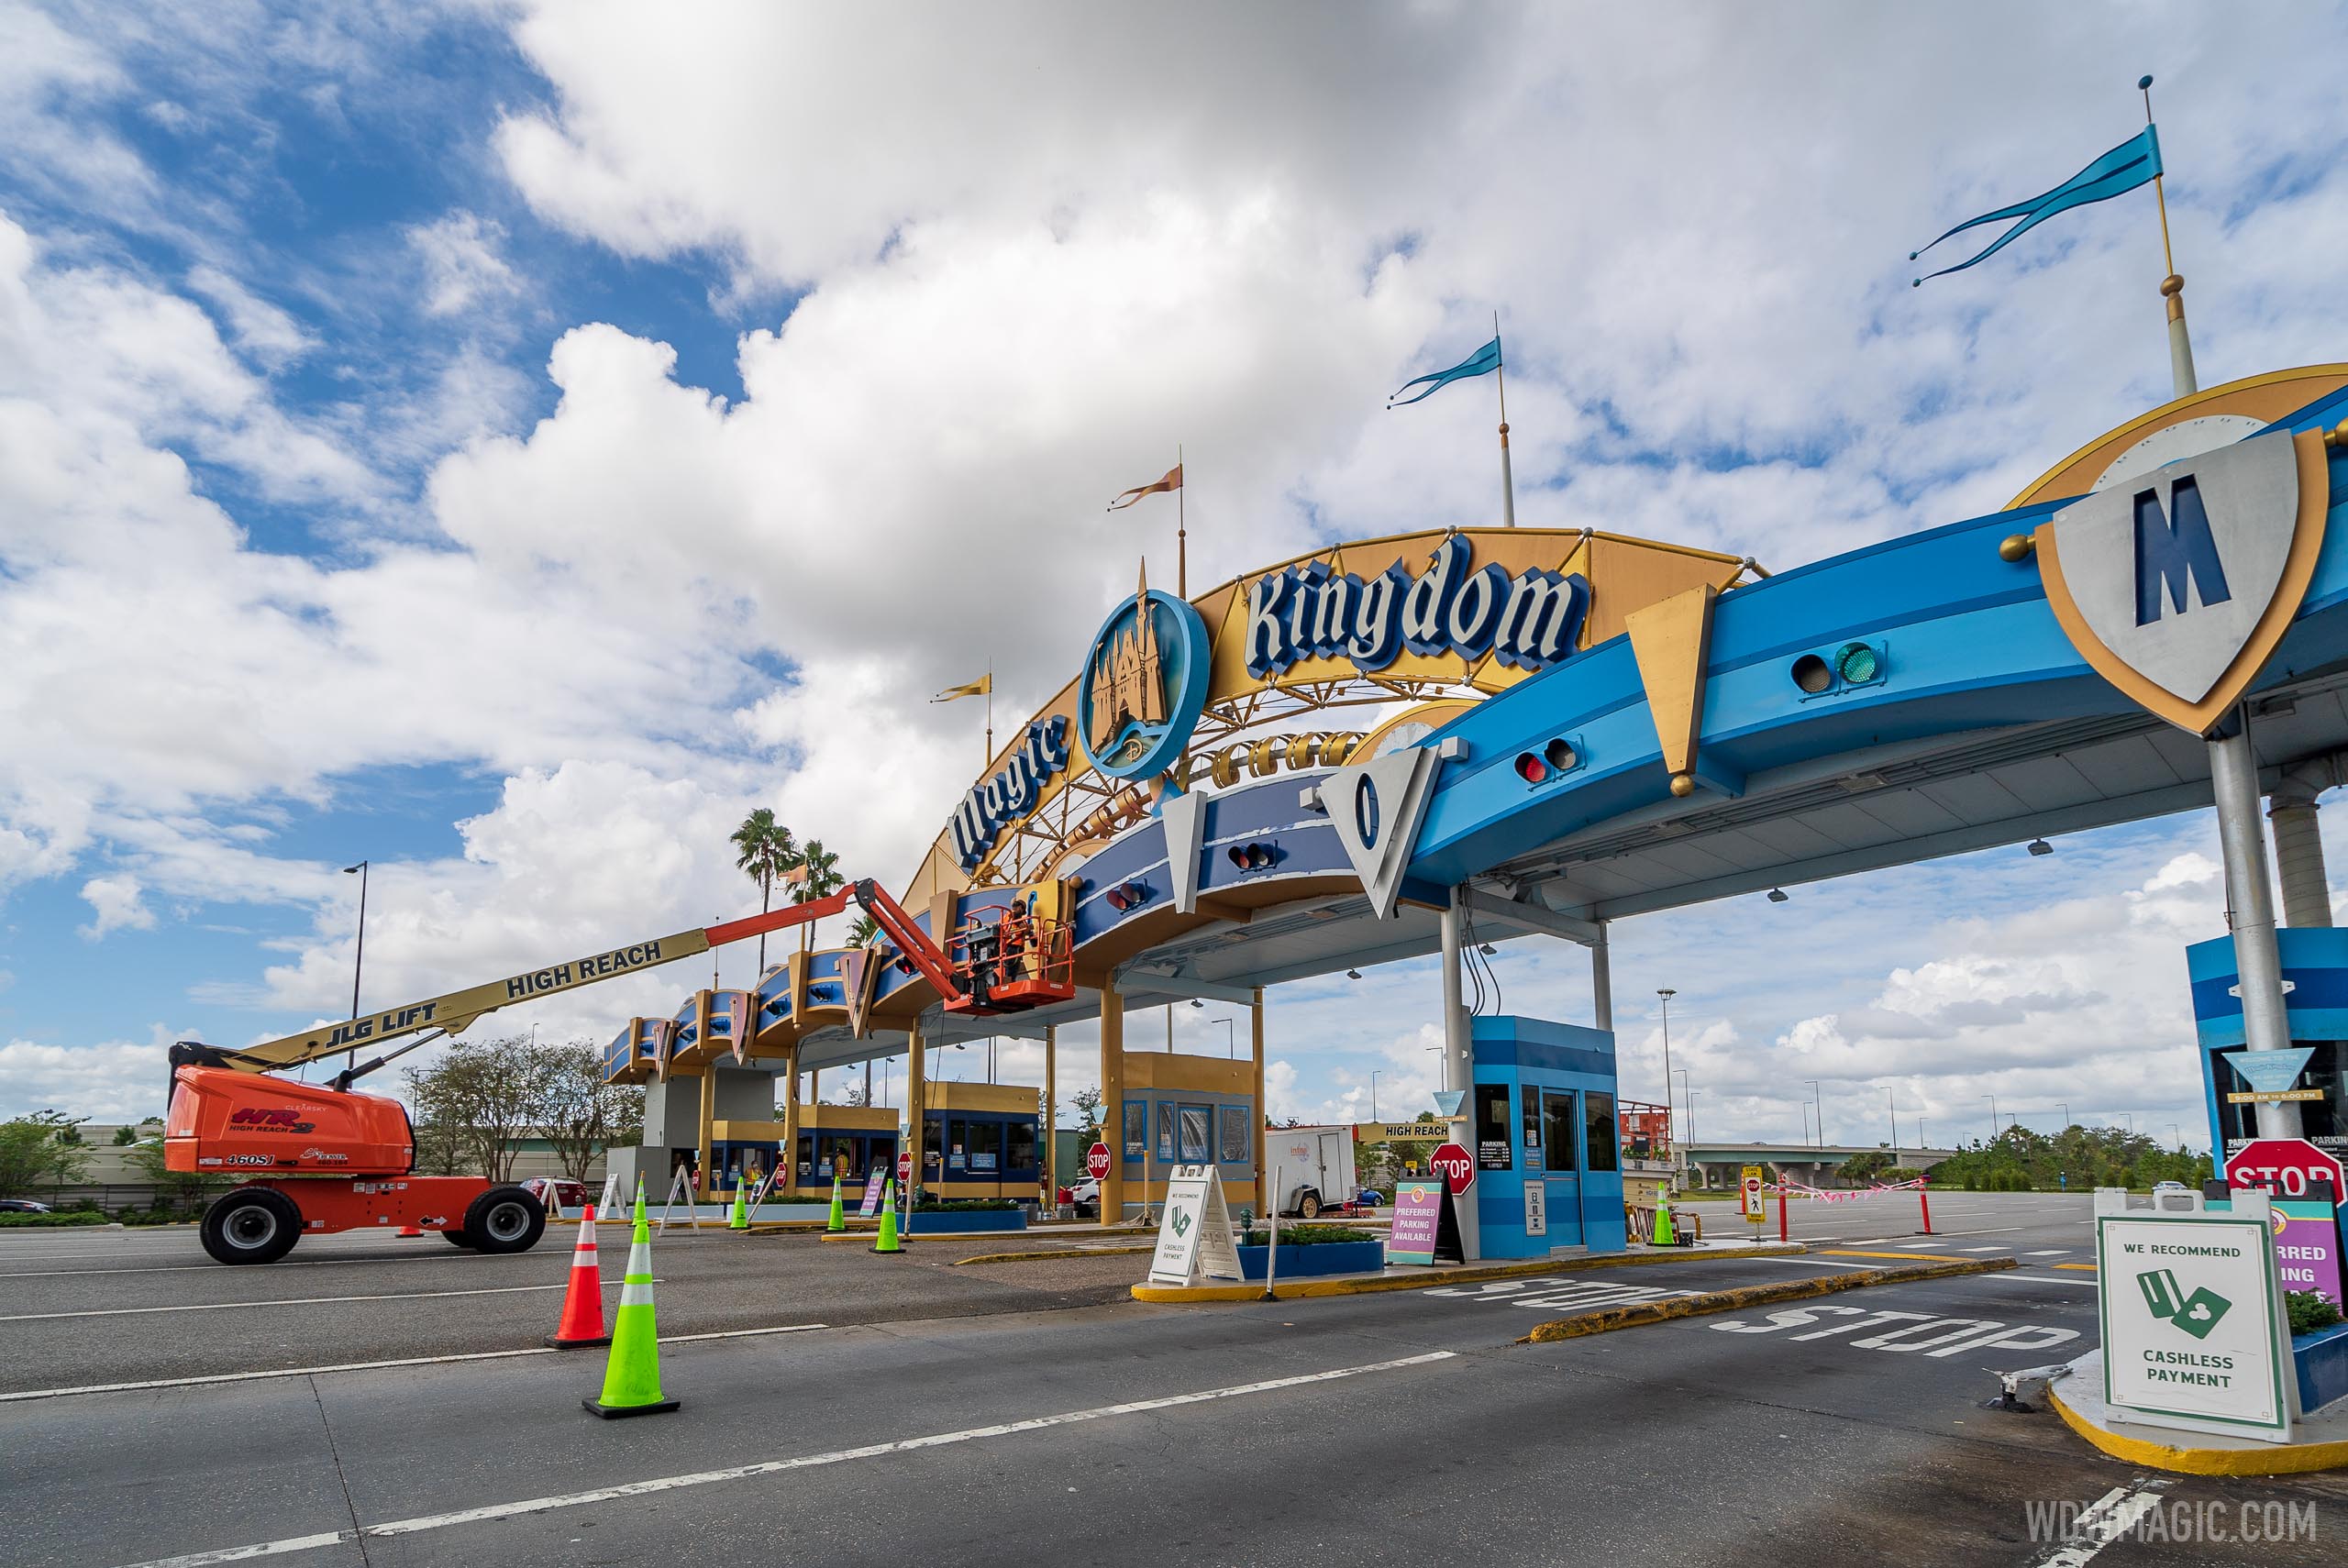 Latest look at the Magic Kingdom auto-plaza refurbishment